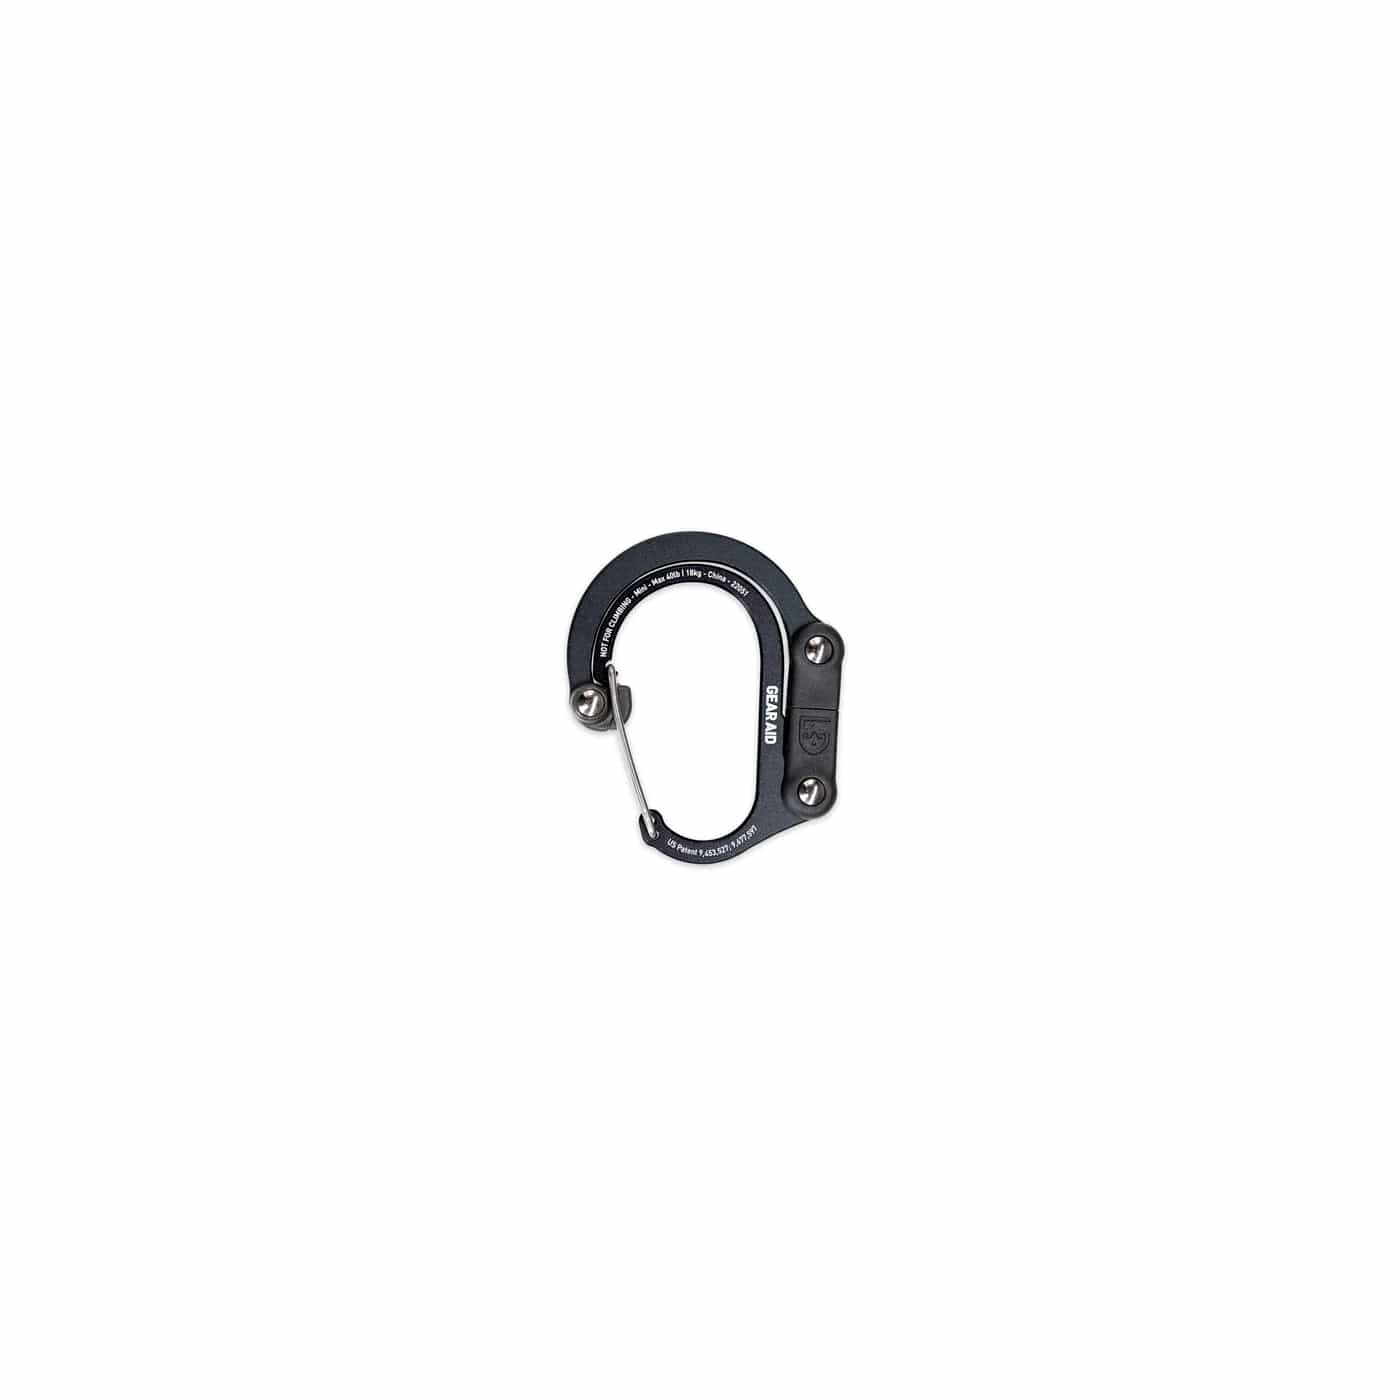 Gear Aid Gear Clip Mini / Stealth Black Heroclip 10213210263MINI